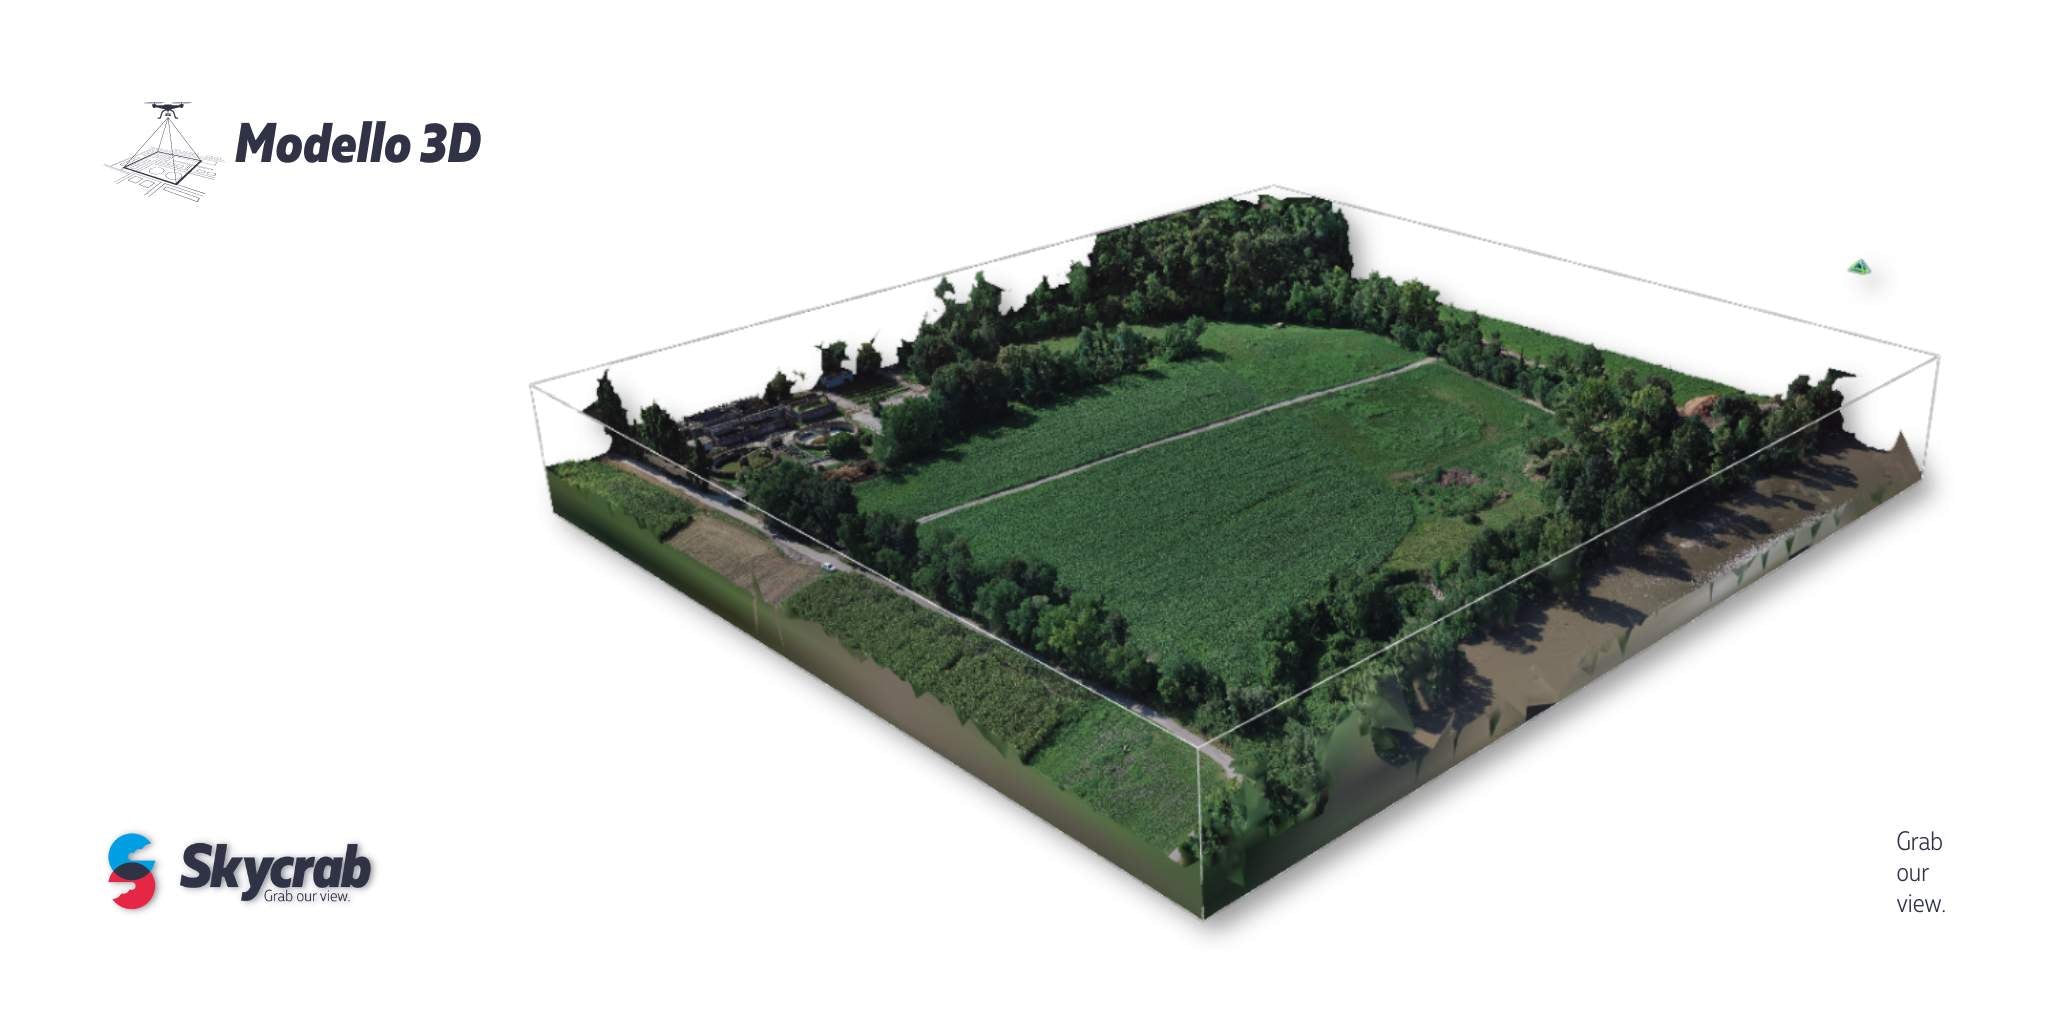 modello 3d_agricoltura di precisione_skycrab academy